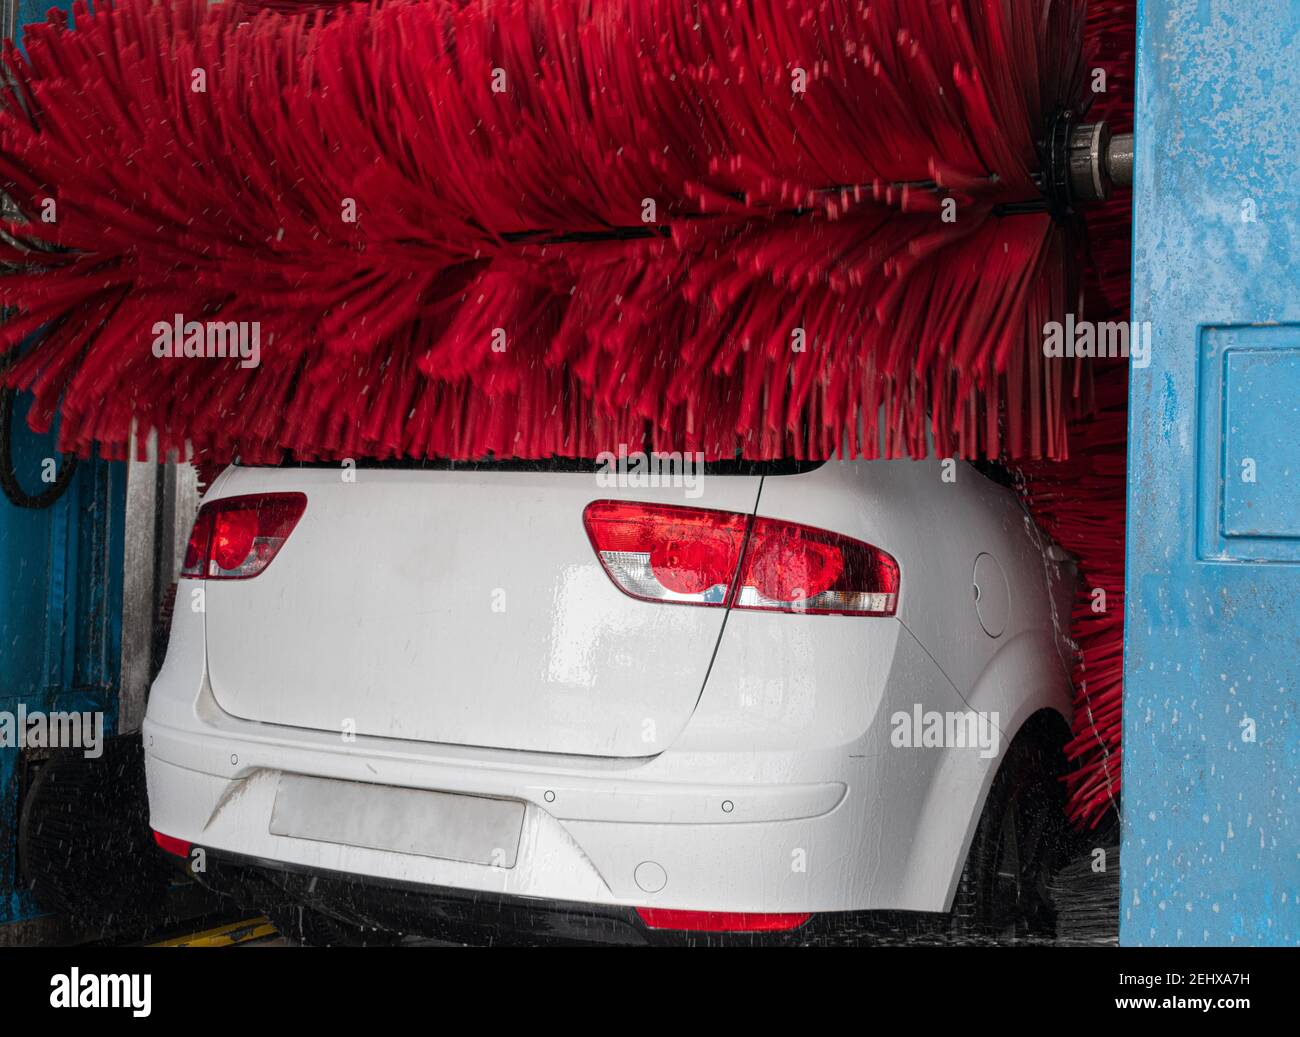 lavaggio auto bianco in autolavaggio automatico con rulli rossi e